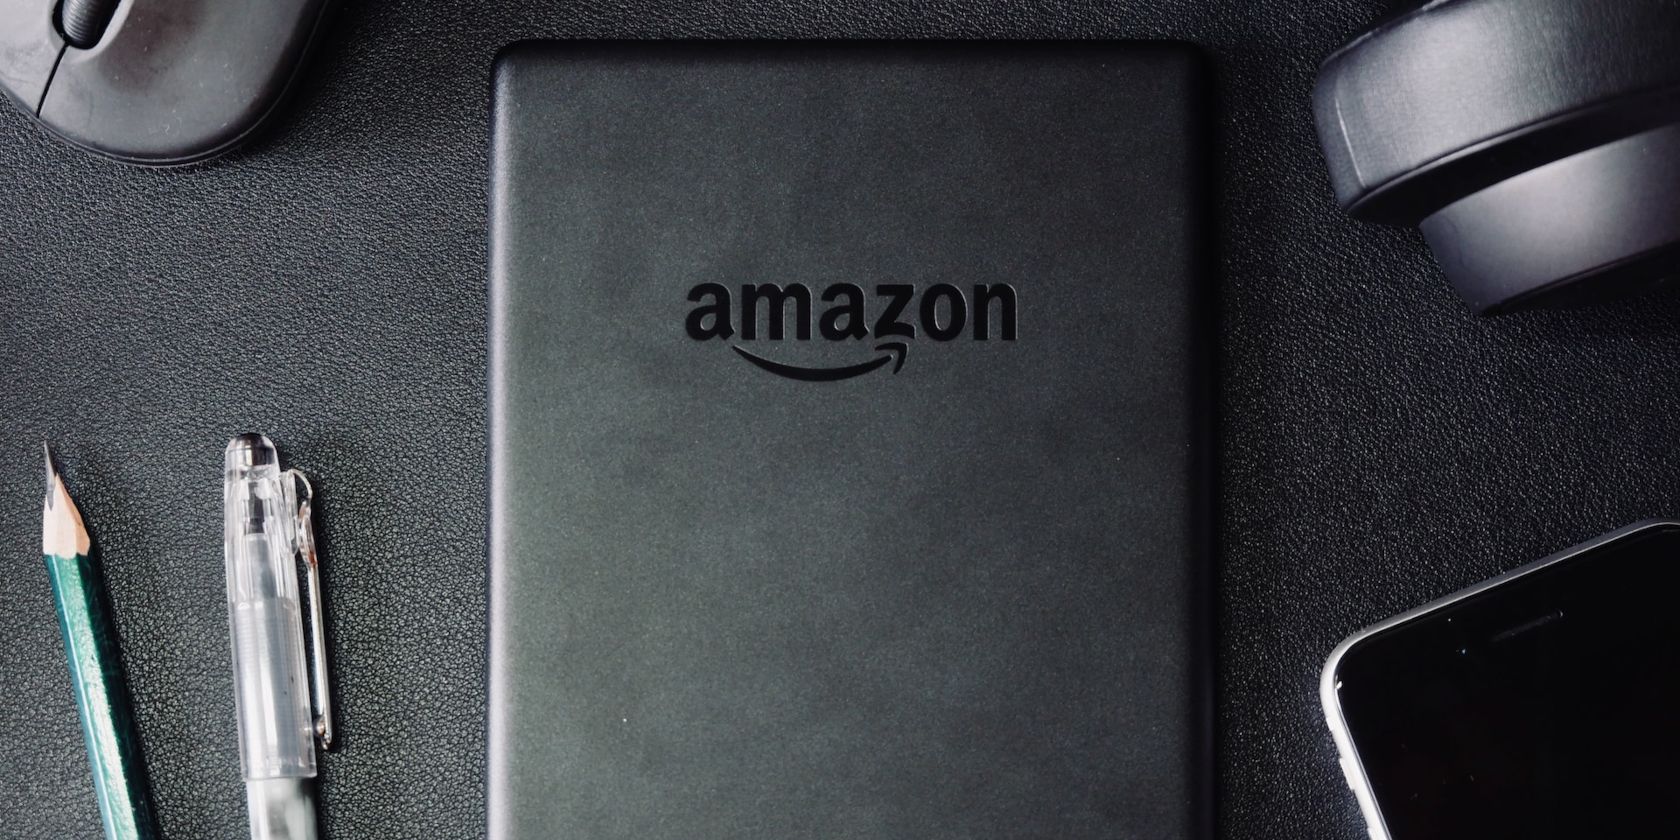 Amazon Kindle Device on Desk